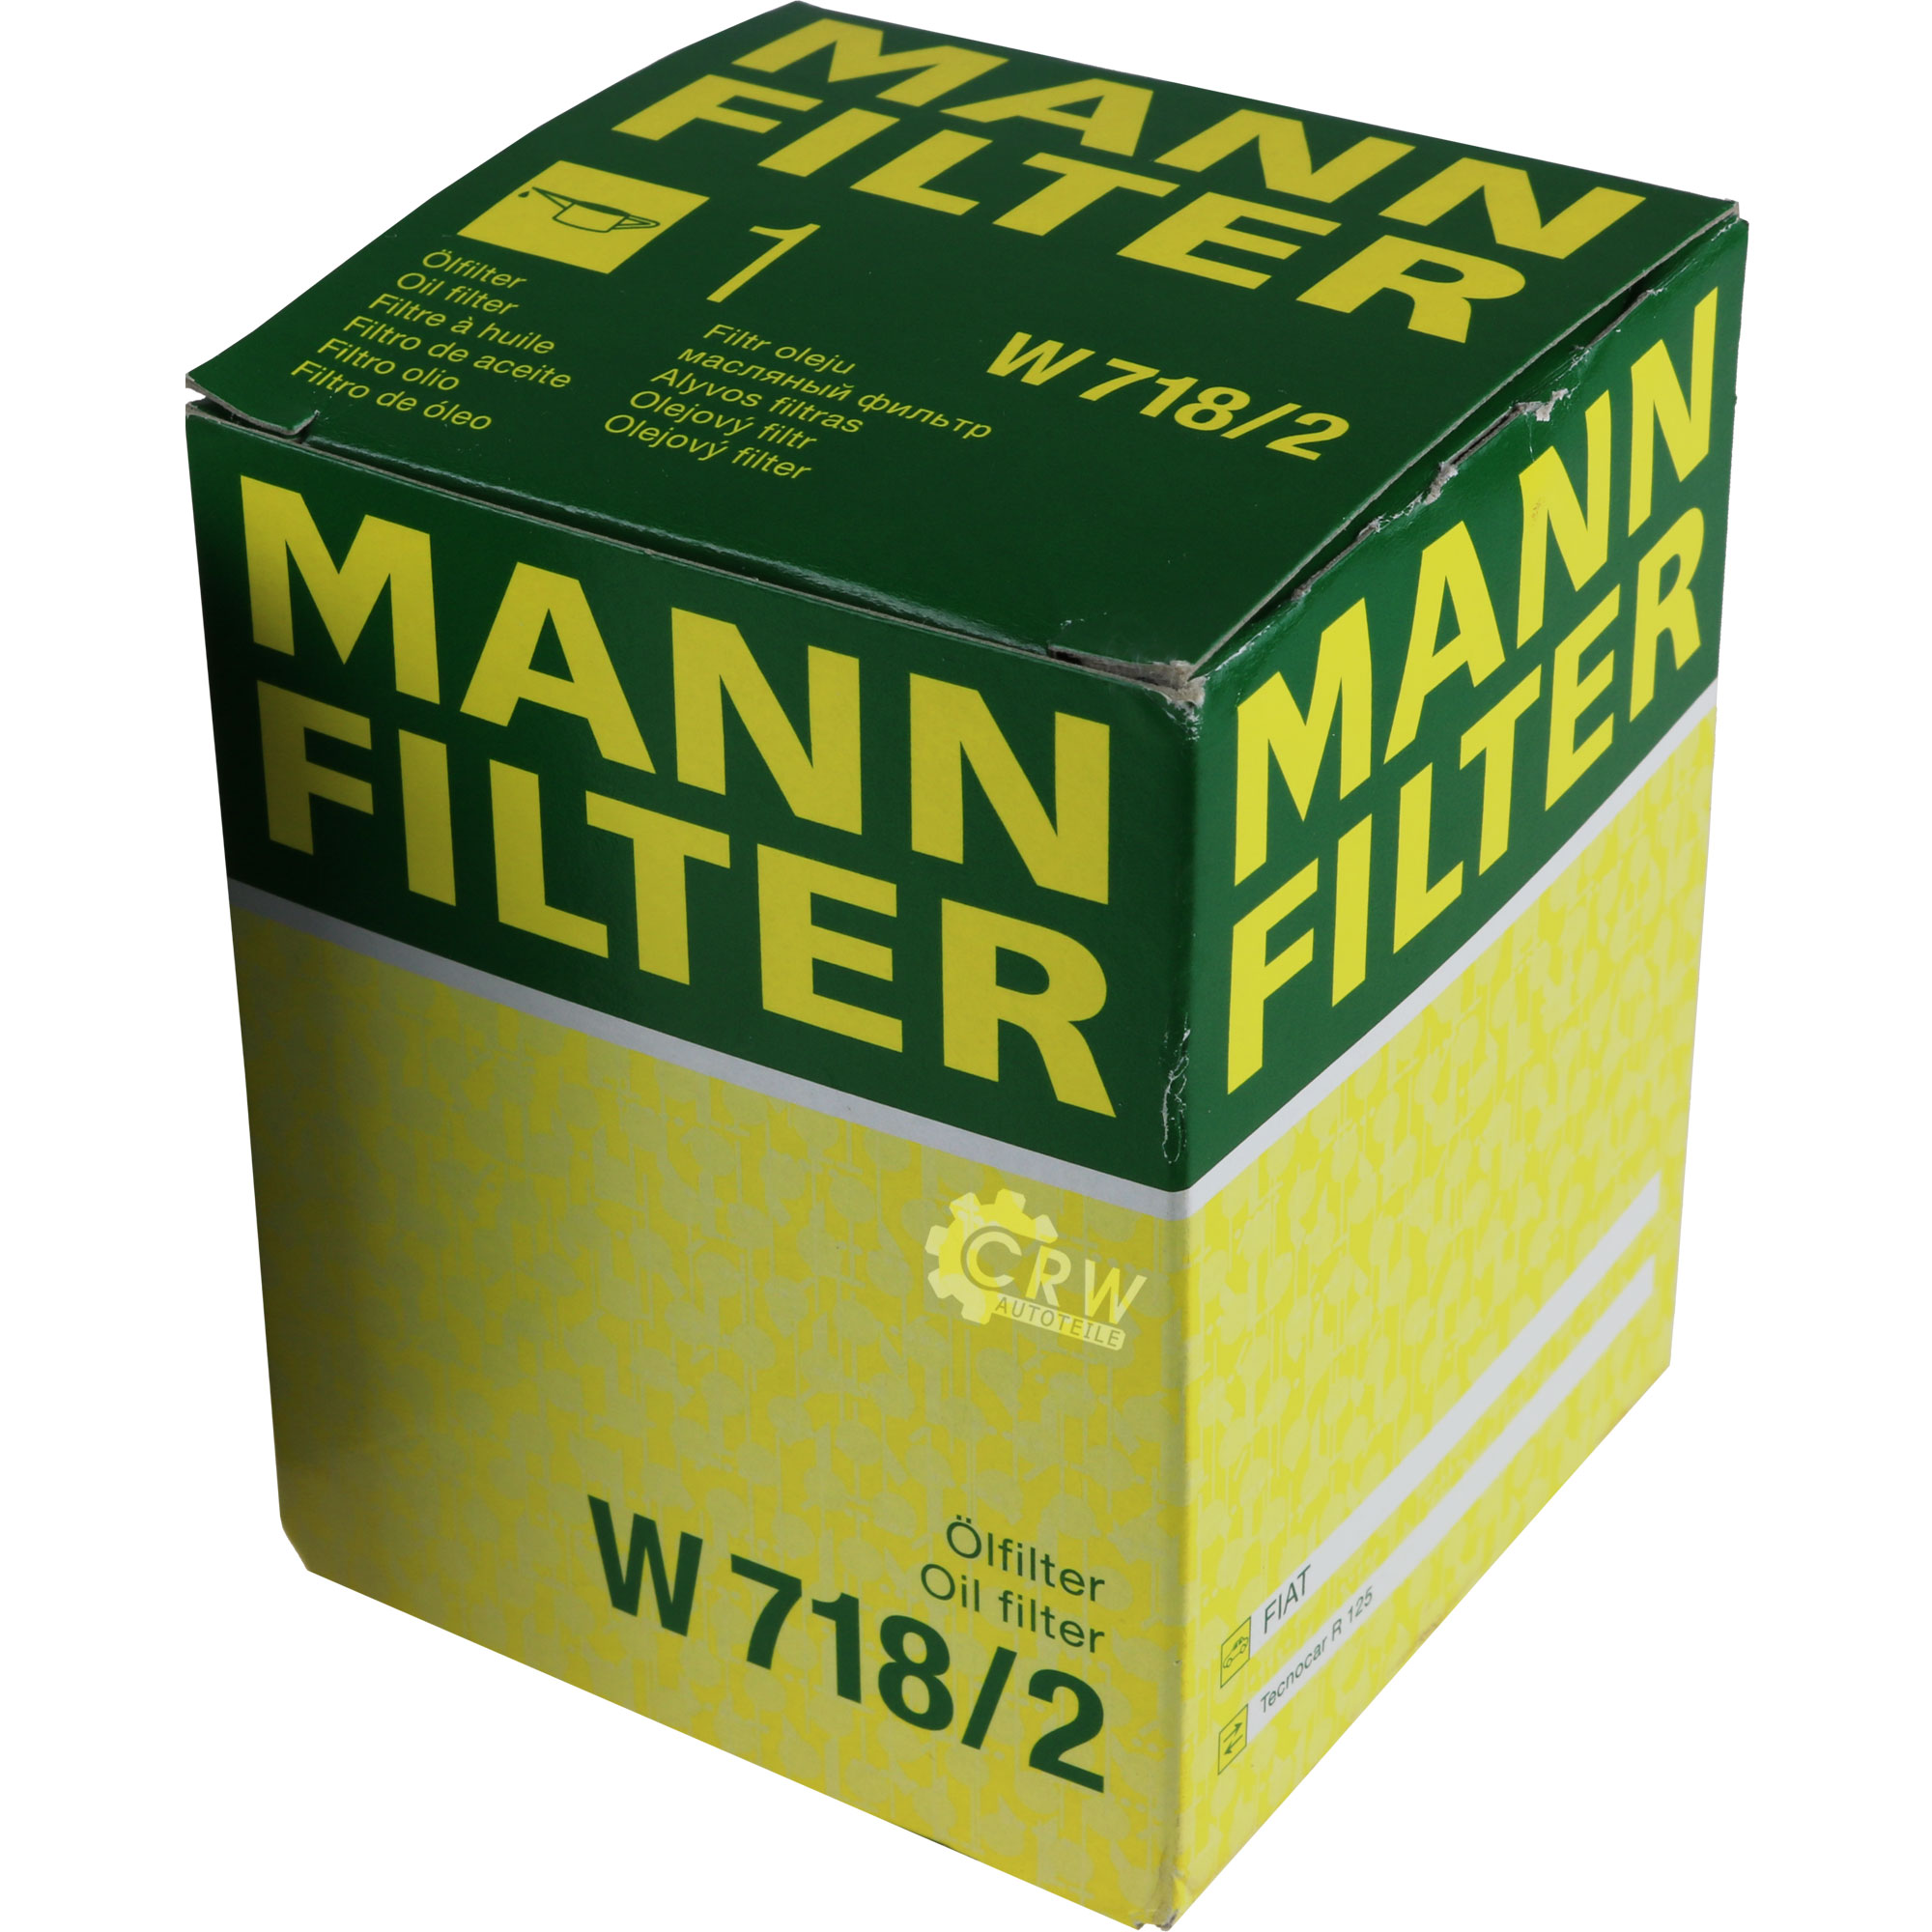 MANN-FILTER Ölfilter W 718/2 Oil Filter